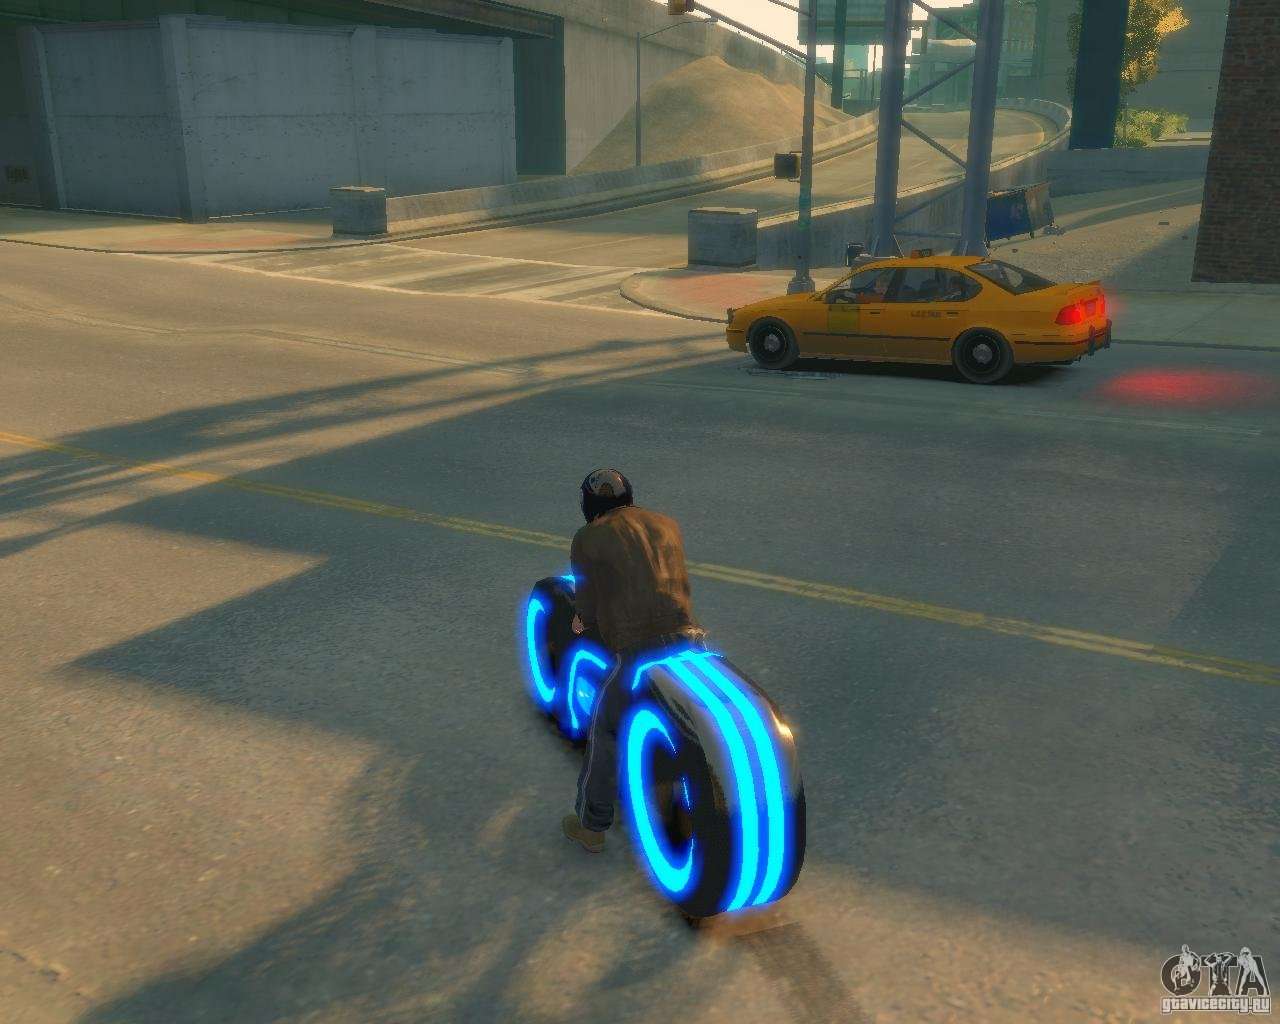 Motocicleta do trono (néon azul) para GTA 4